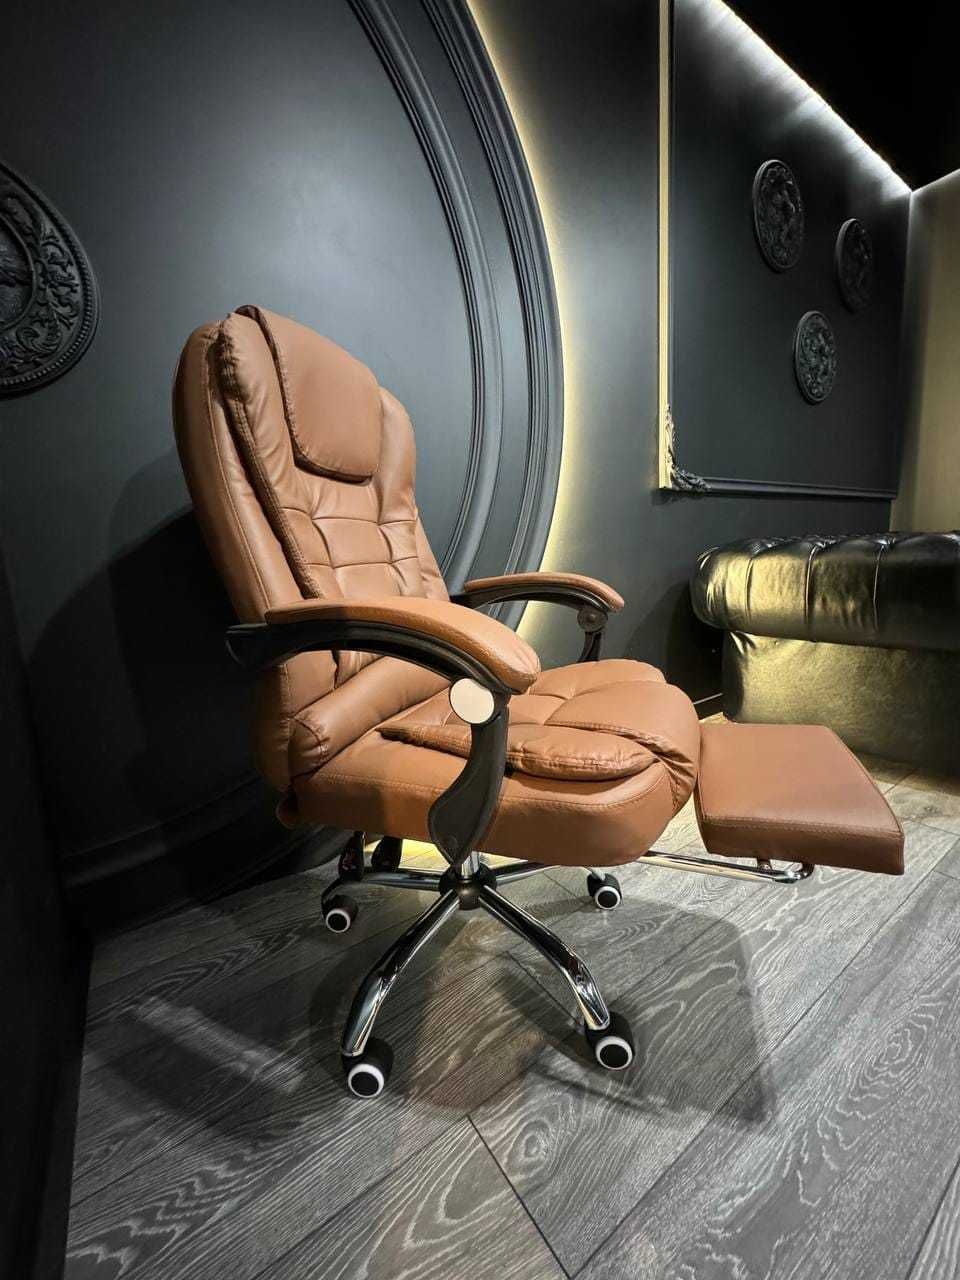 Офисное компьютерное кресло руководителя Virgo X6 с подставкой для ног